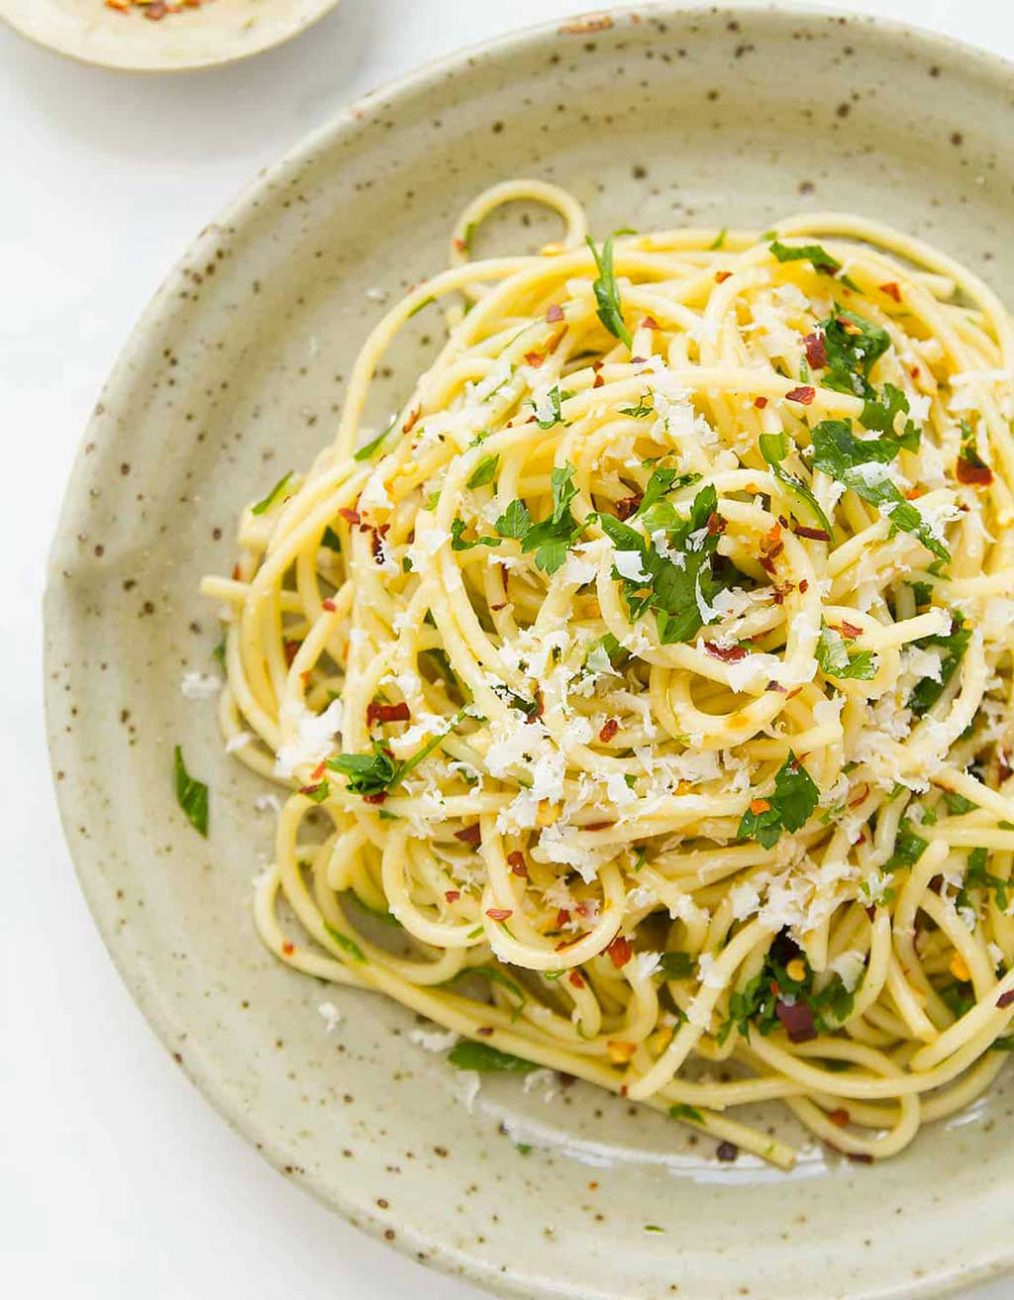 Spaghetti aglio olio e ricotta salata